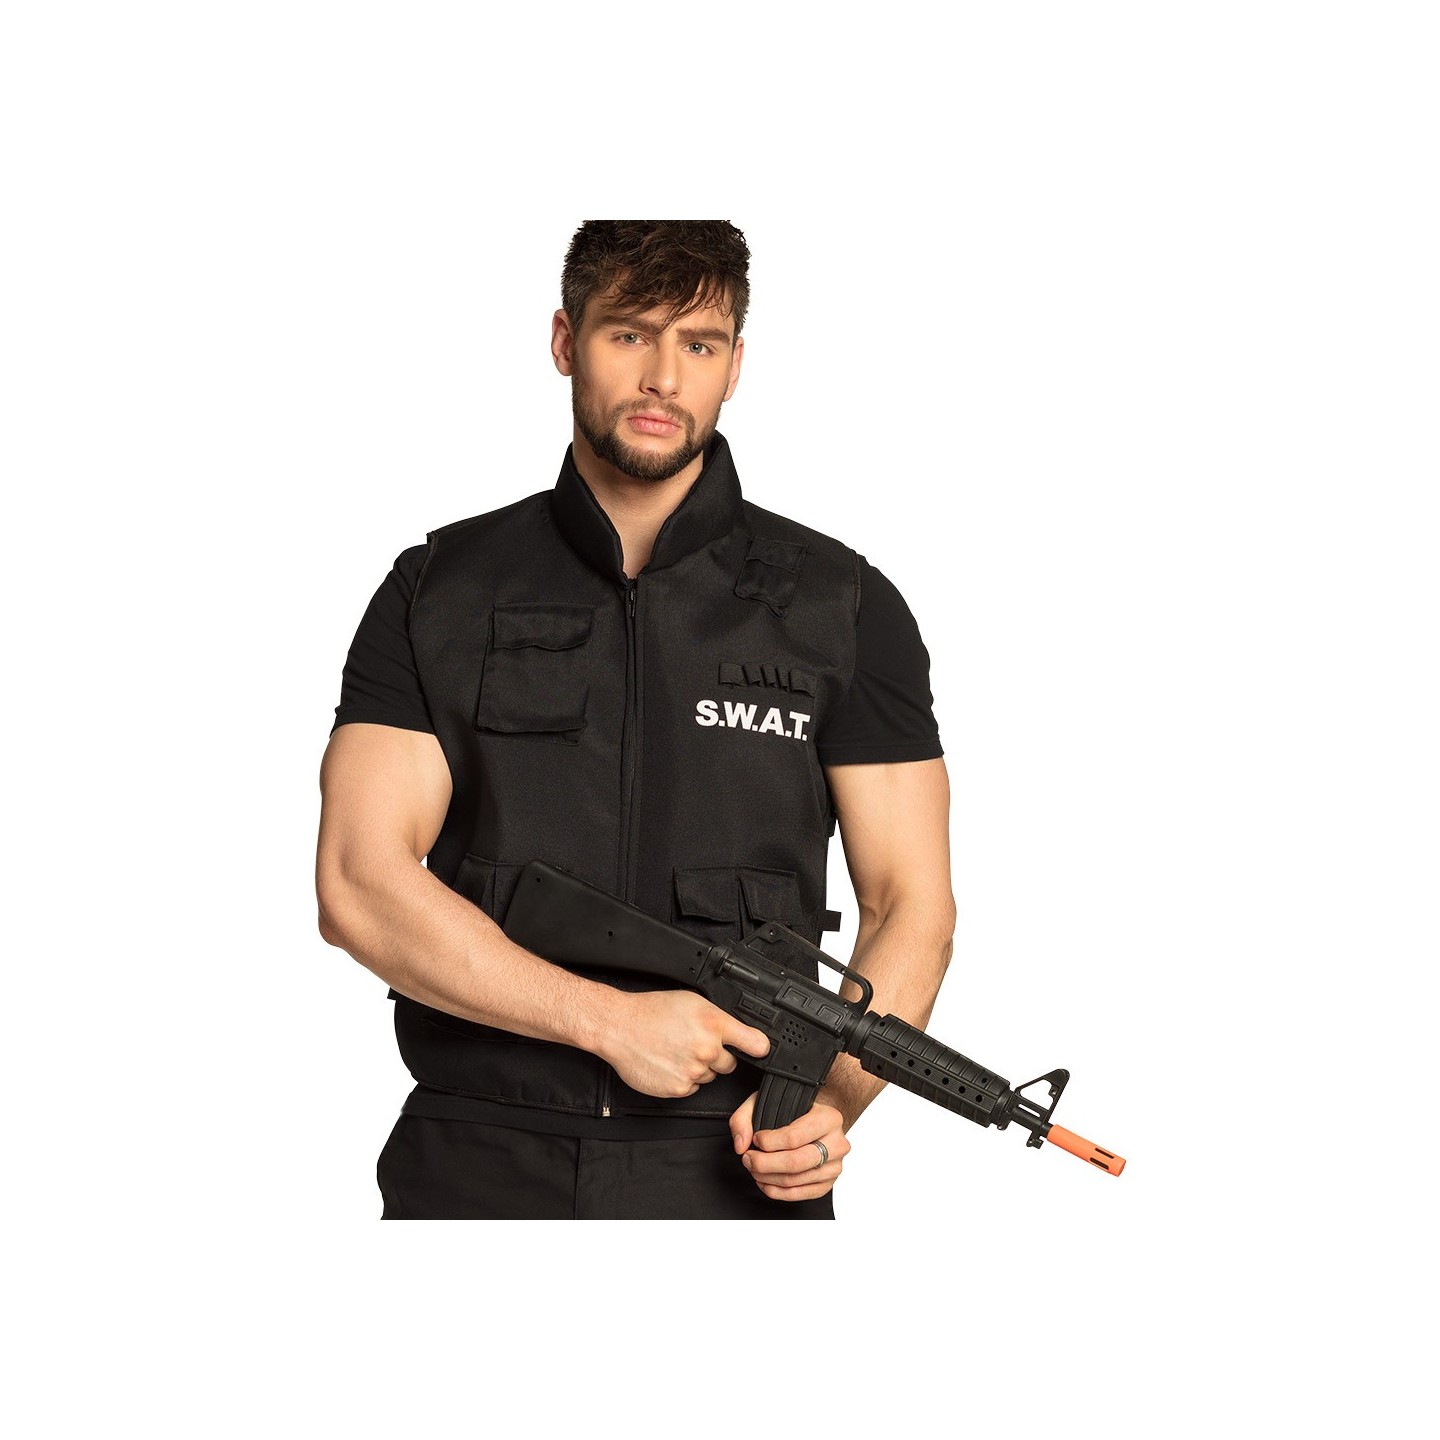 Verslaafde lokaal Marty Fielding Speelgoed SWAT geweer mitrailette 62cm | Jokershop.be